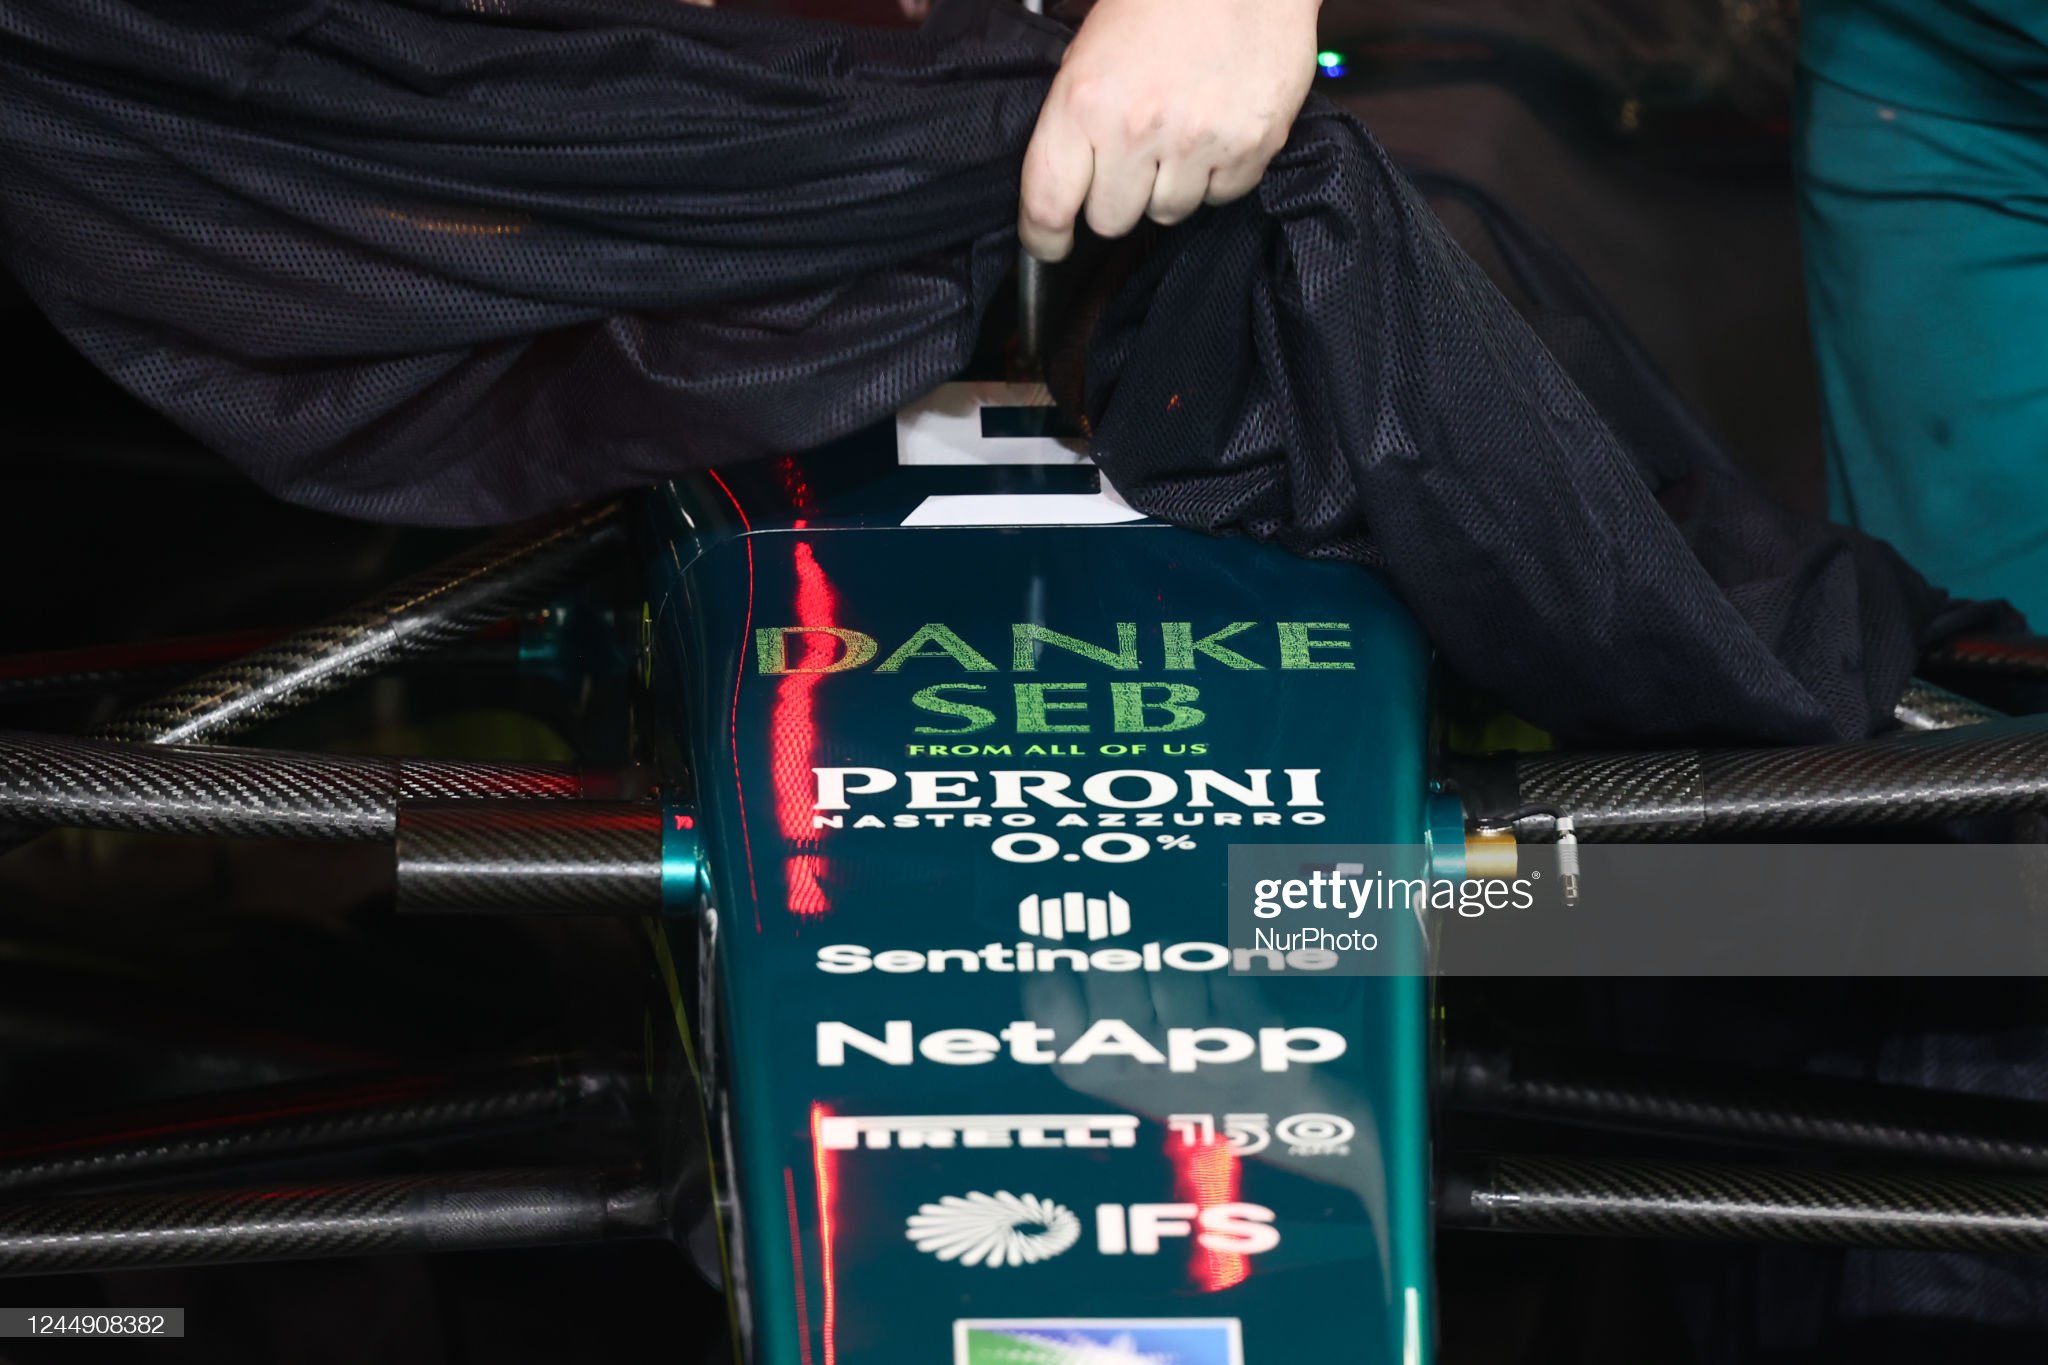 'Danke Seb' sign is seen on the Aston Martin of Sebastian Vettel.